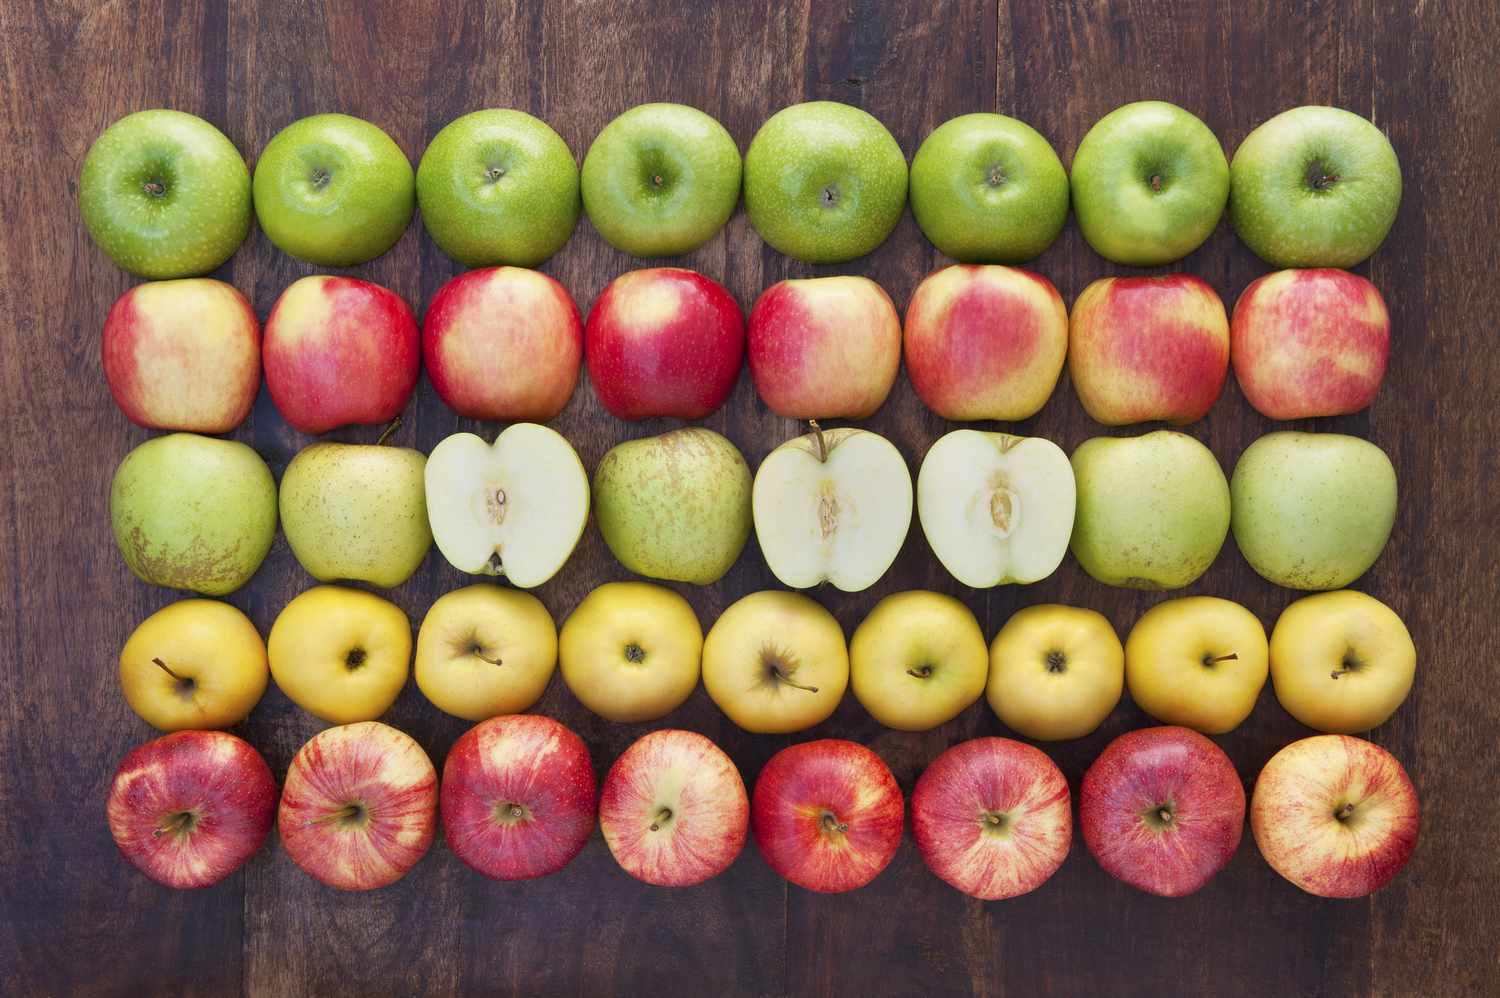 Apple varieties 